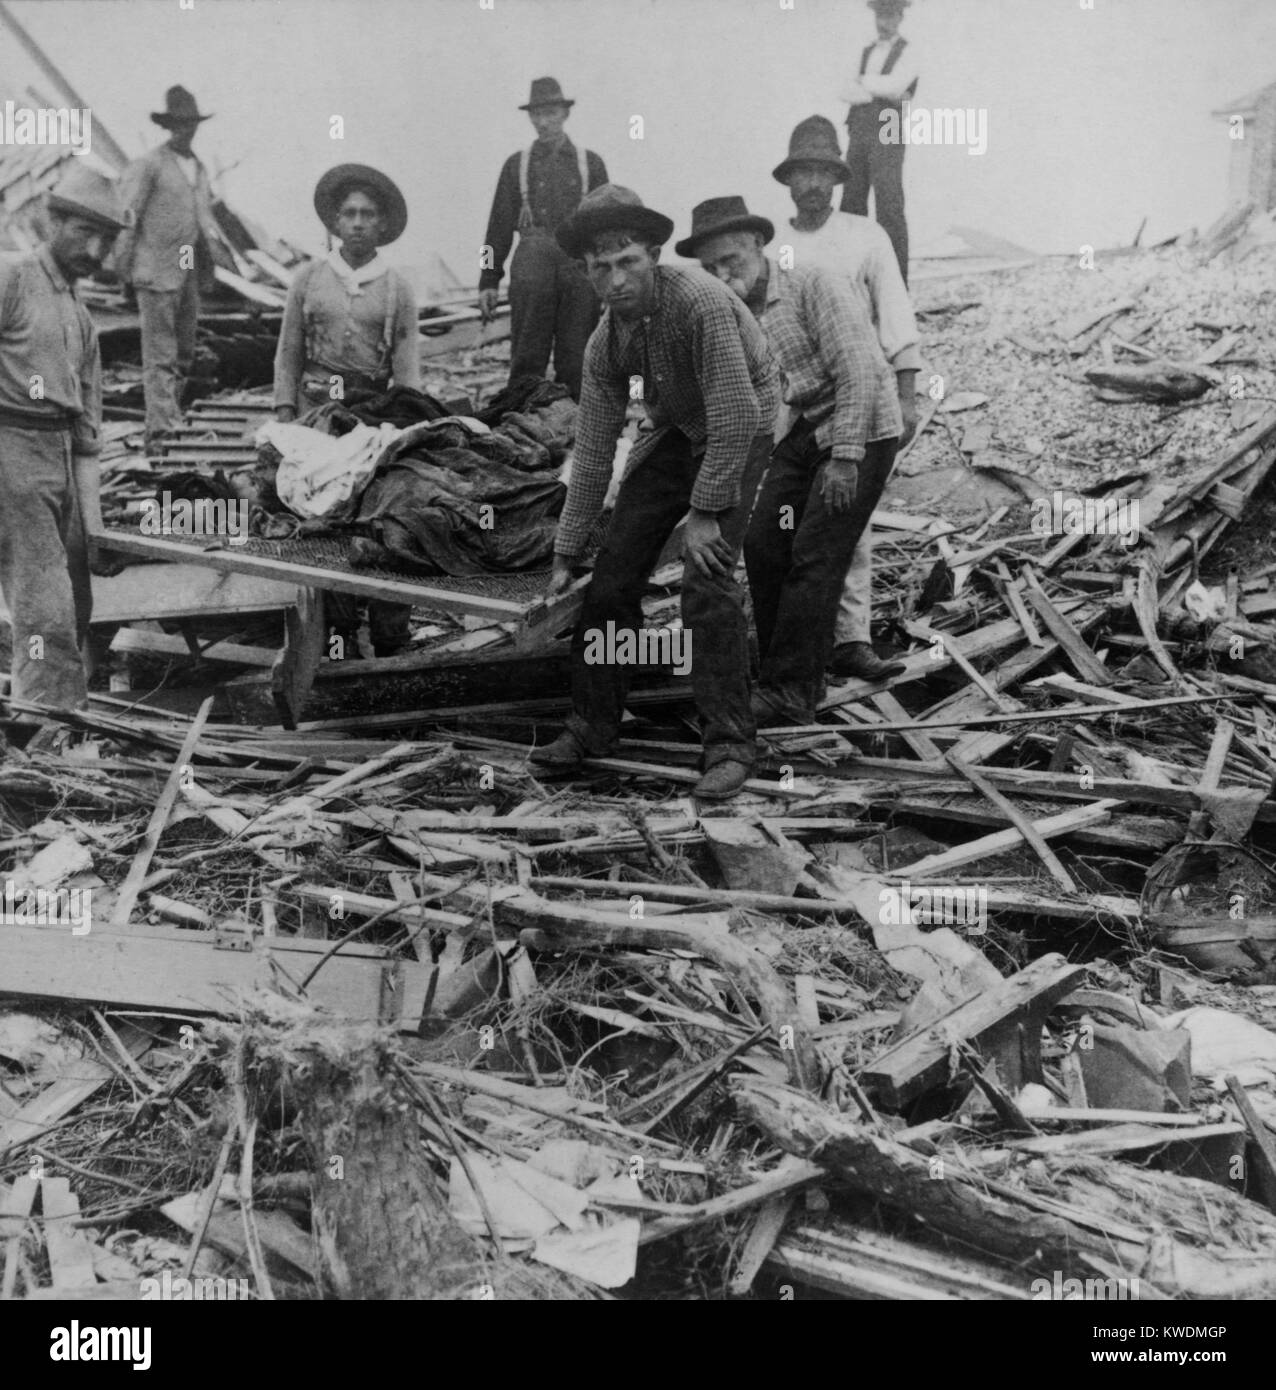 Männer, die Körper auf Keilrahmen, durch die Trümmer des Hurrikan in Galveston, Texas, Sept. 1900 umgeben. Die Katastrophe ereignete sich am 08.09., aber Hilfsmaßnahmen dauerte zwei Tage beginnen und dauerte Wochen (BSLOC 2017 17 85) Stockfoto